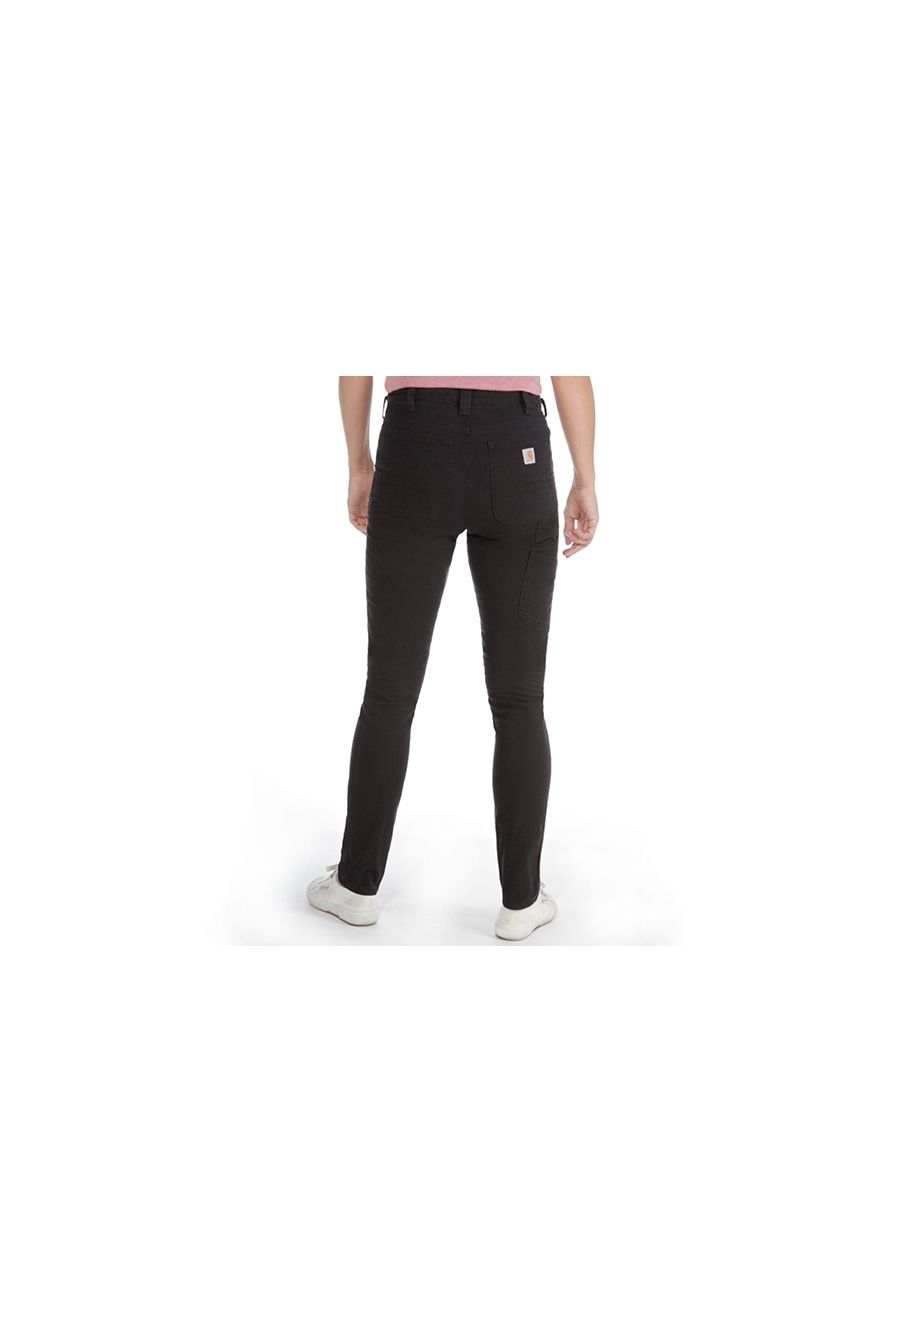 Carhartt 103224 - Women's Slim Fit Crawford Pant